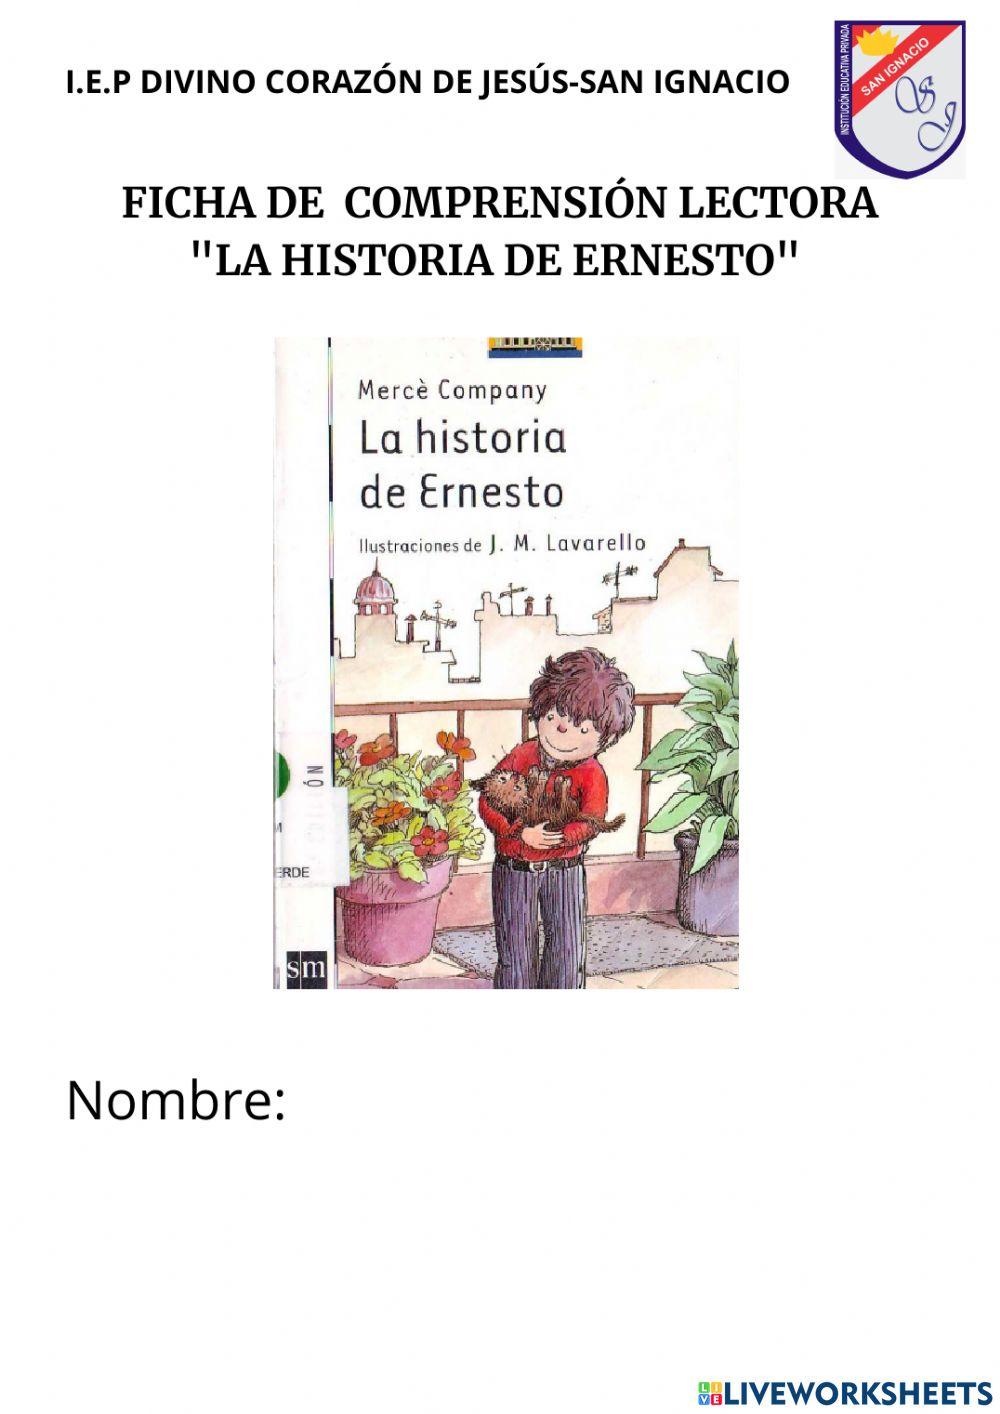 Ficha de comprensión lectora -La historia de Ernesto-